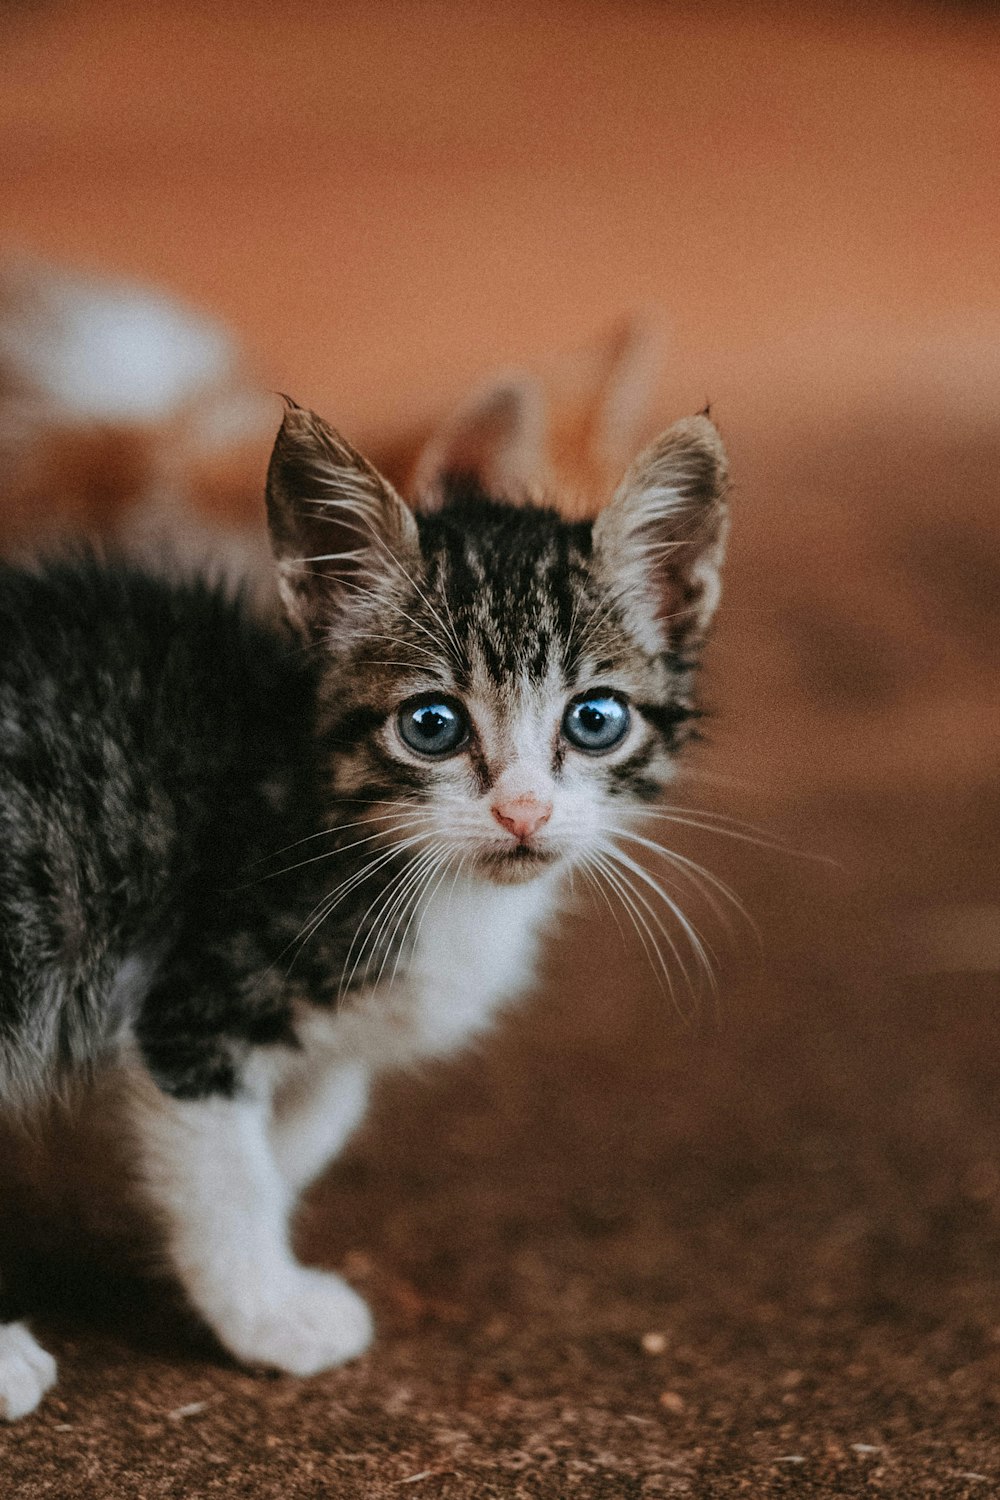 Un piccolo gattino con gli occhi azzurri in piedi su un pavimento